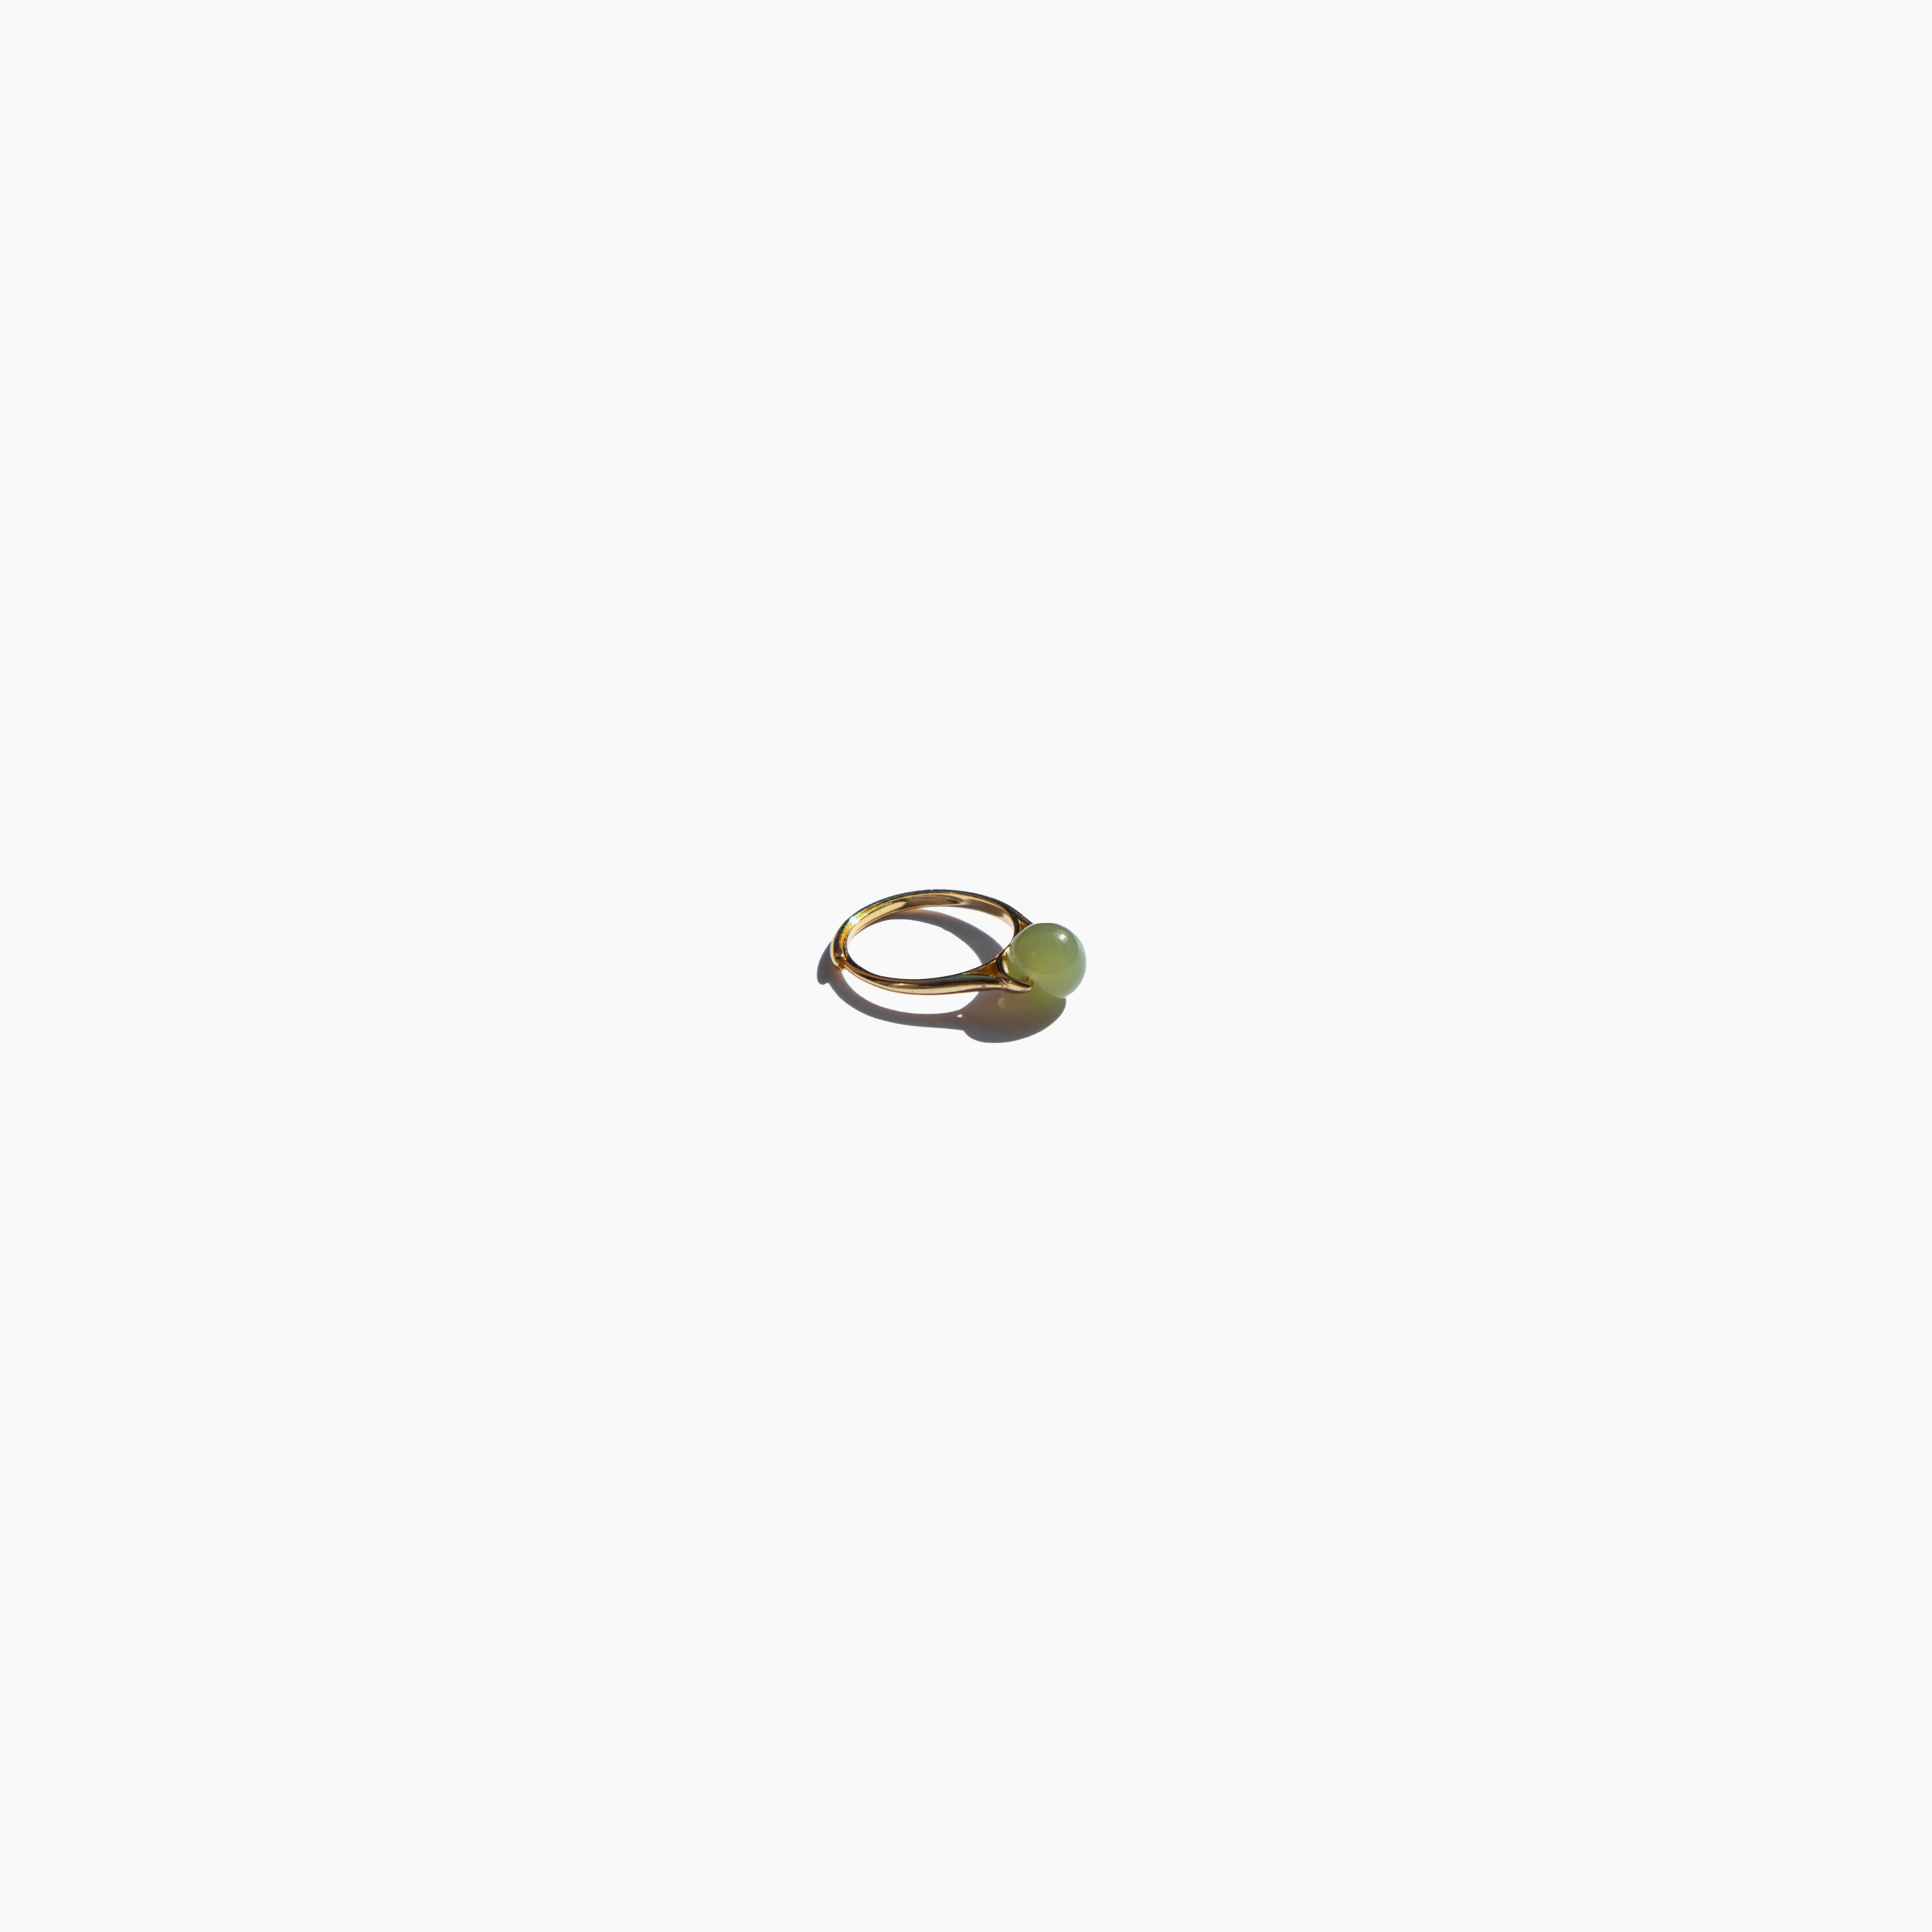 Equinox — Green bead jade ring